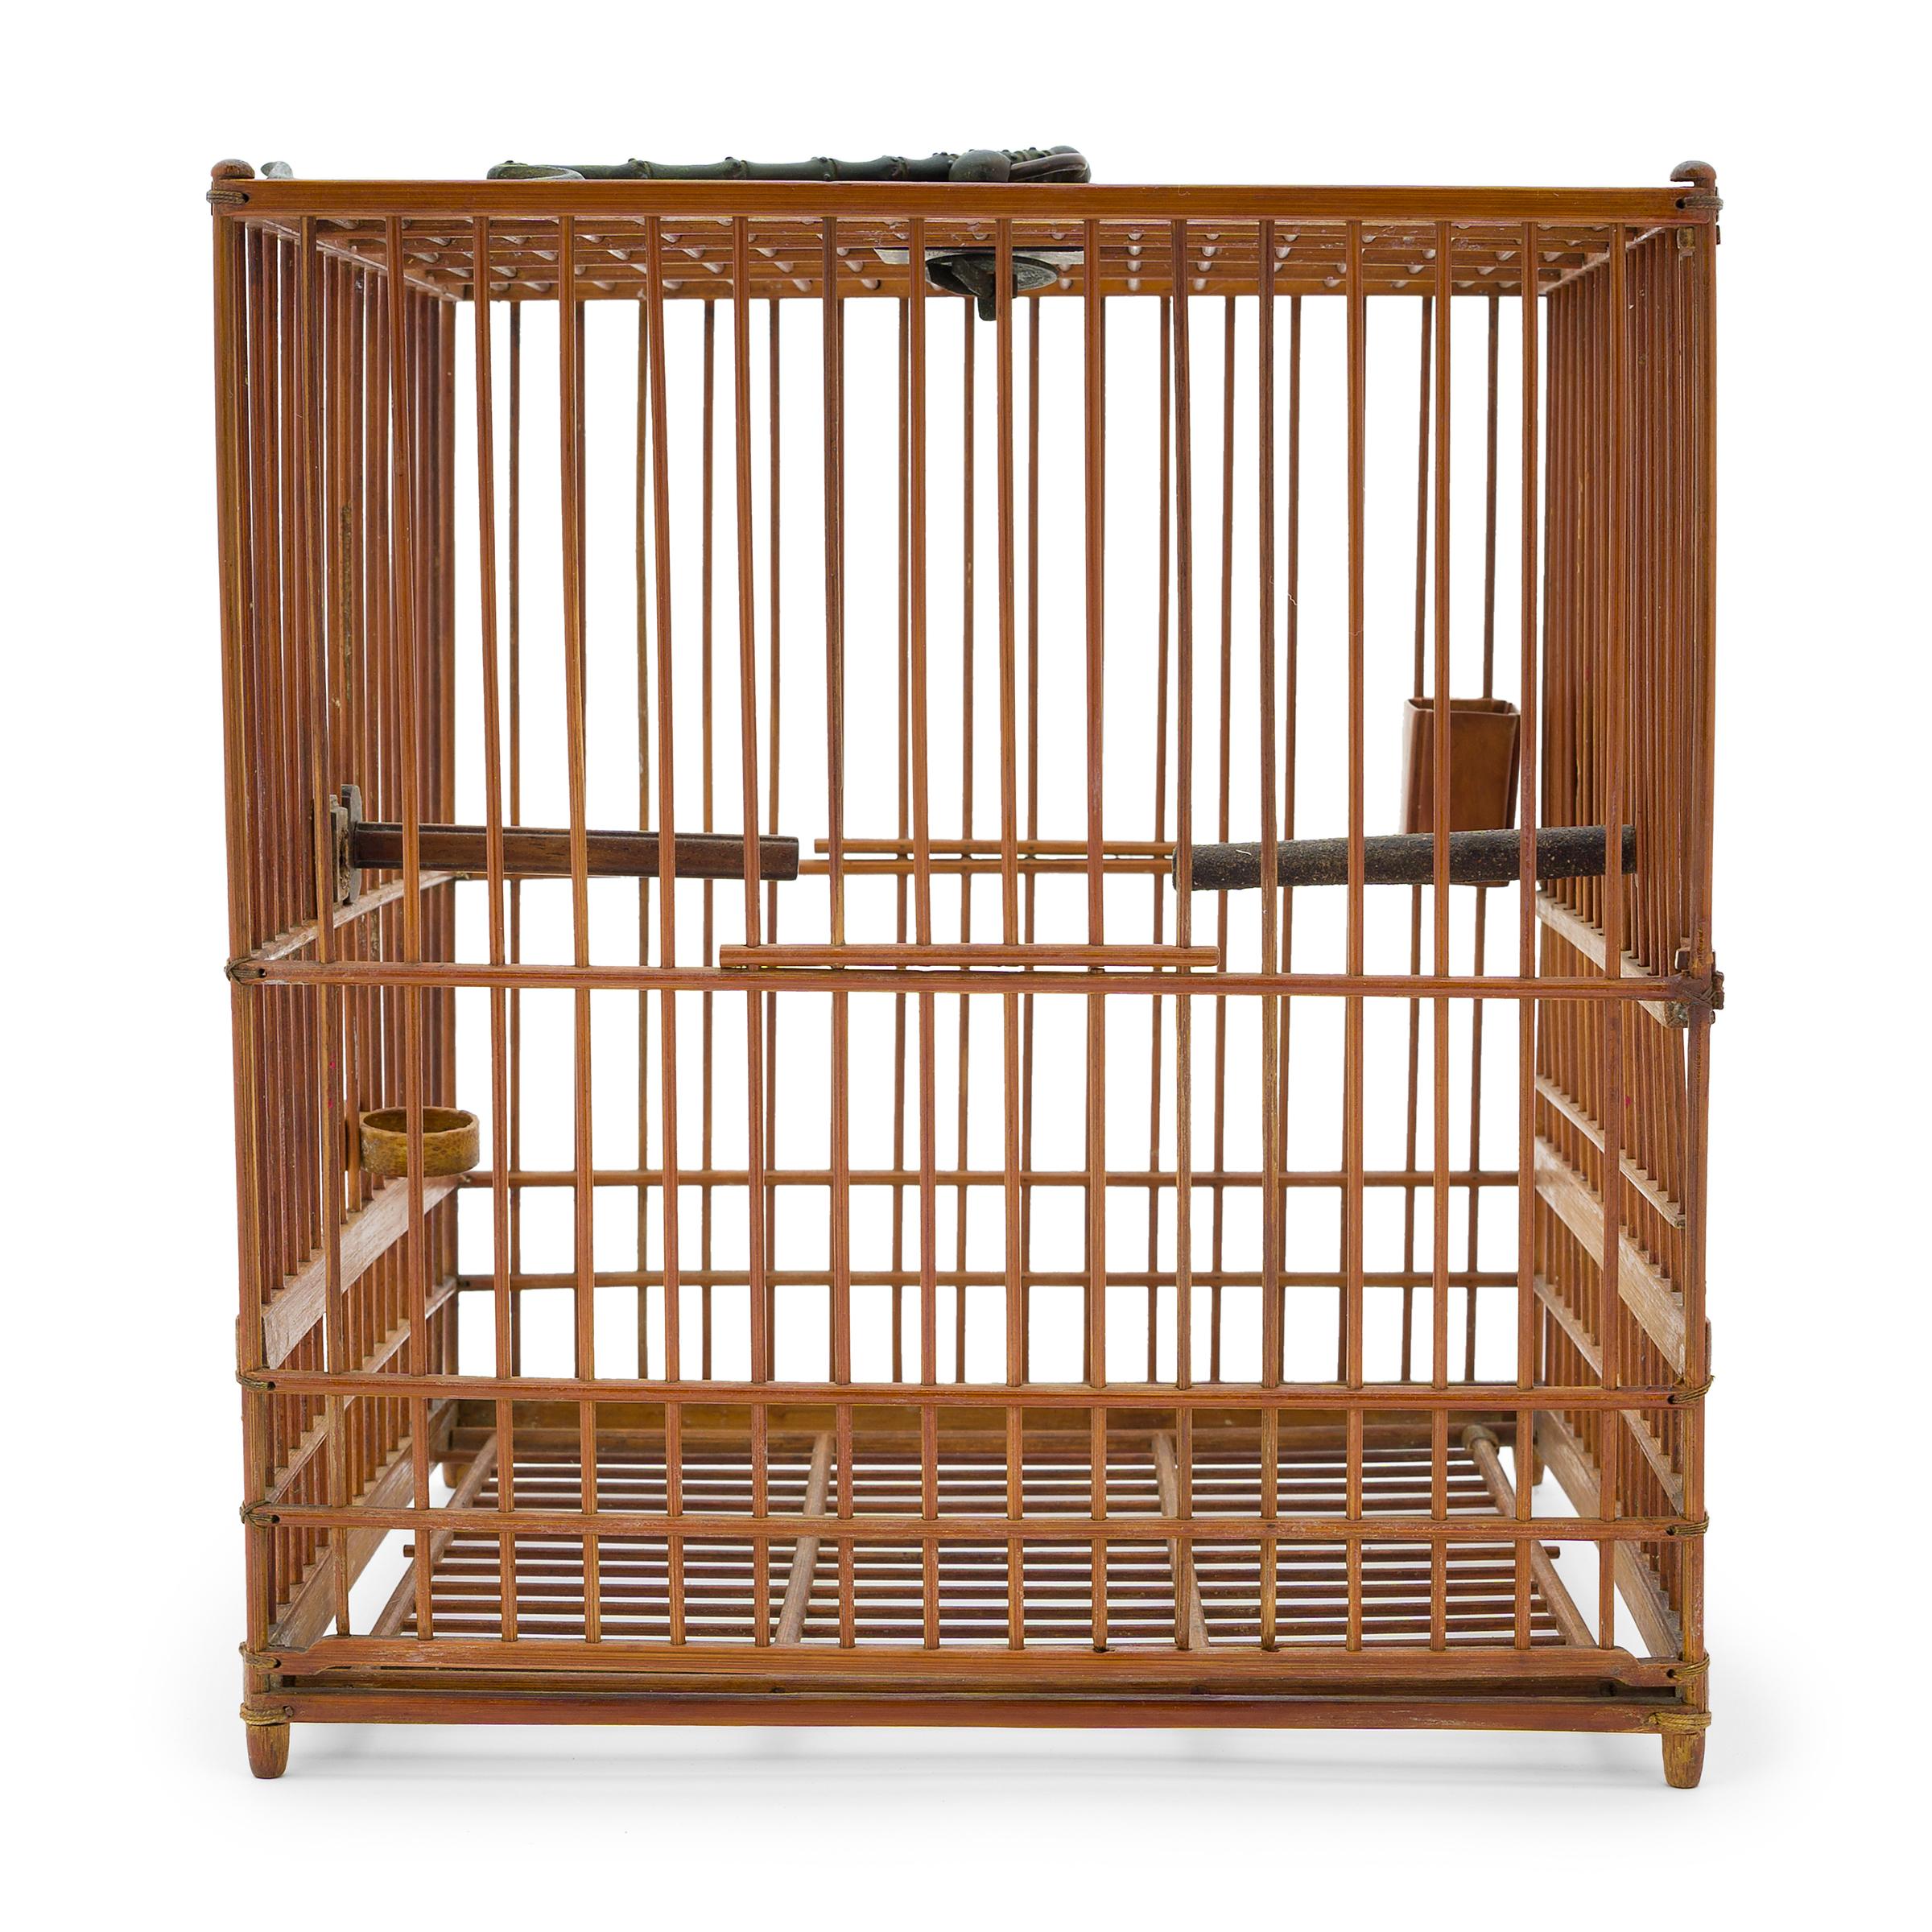 Cette cage à oiseaux bien proportionnée abritait autrefois l'animal de compagnie d'un aristocrate de la dynastie Qing. Datant du début du 20e siècle, cette cage carrée est soigneusement assemblée à partir de fines tiges de bambou. Elle est dotée